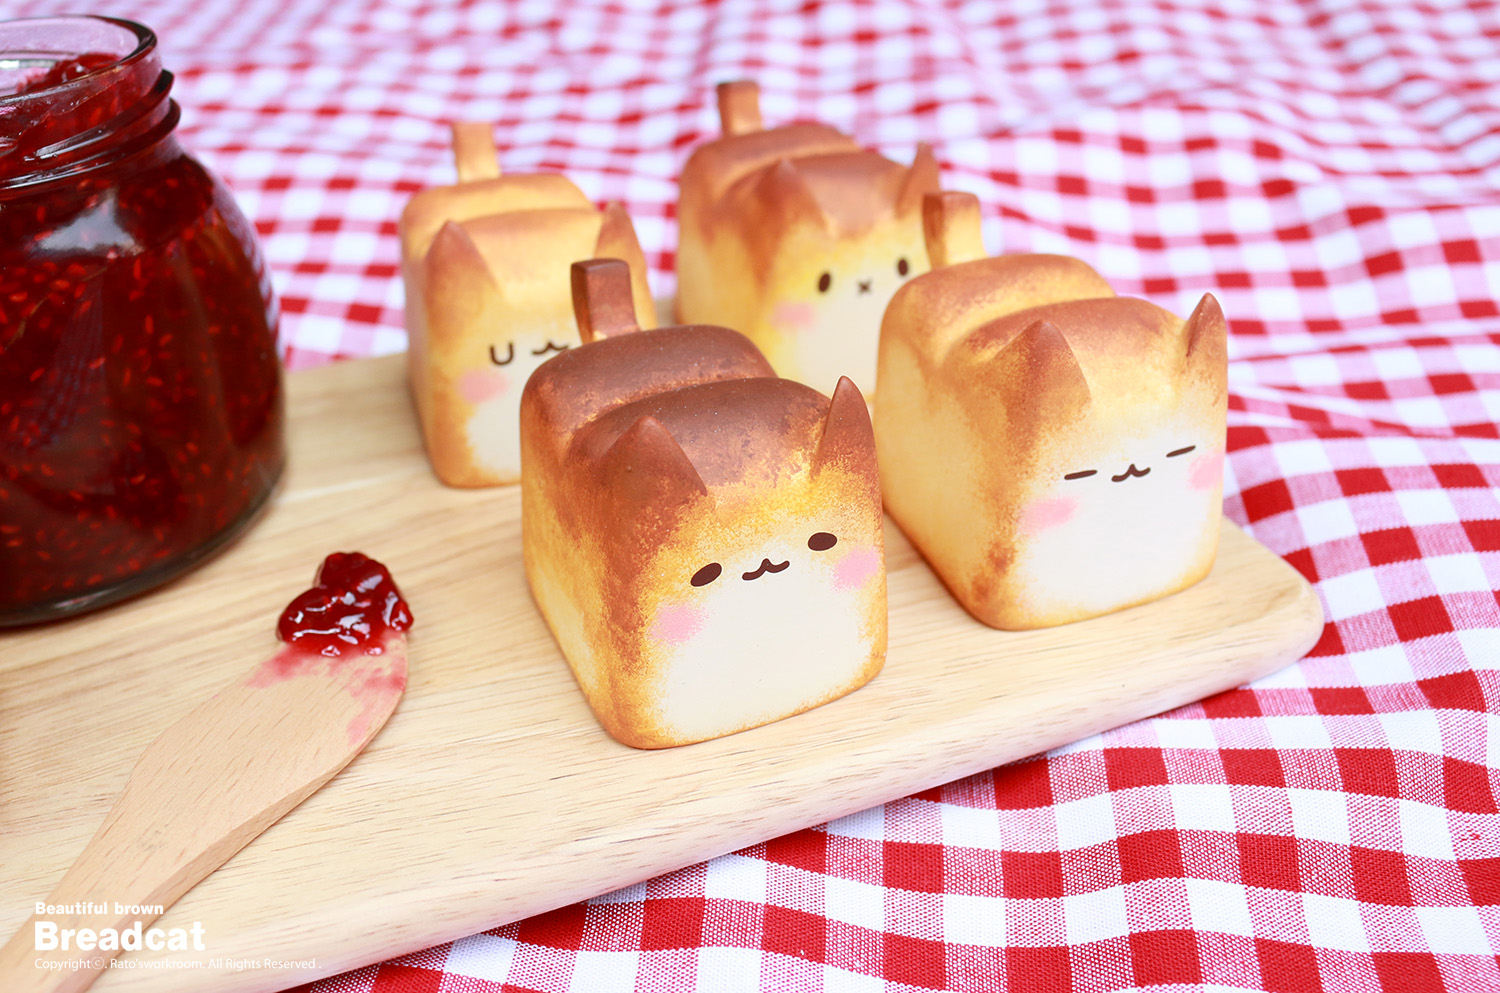 Warmly 'Baked' Breadcat